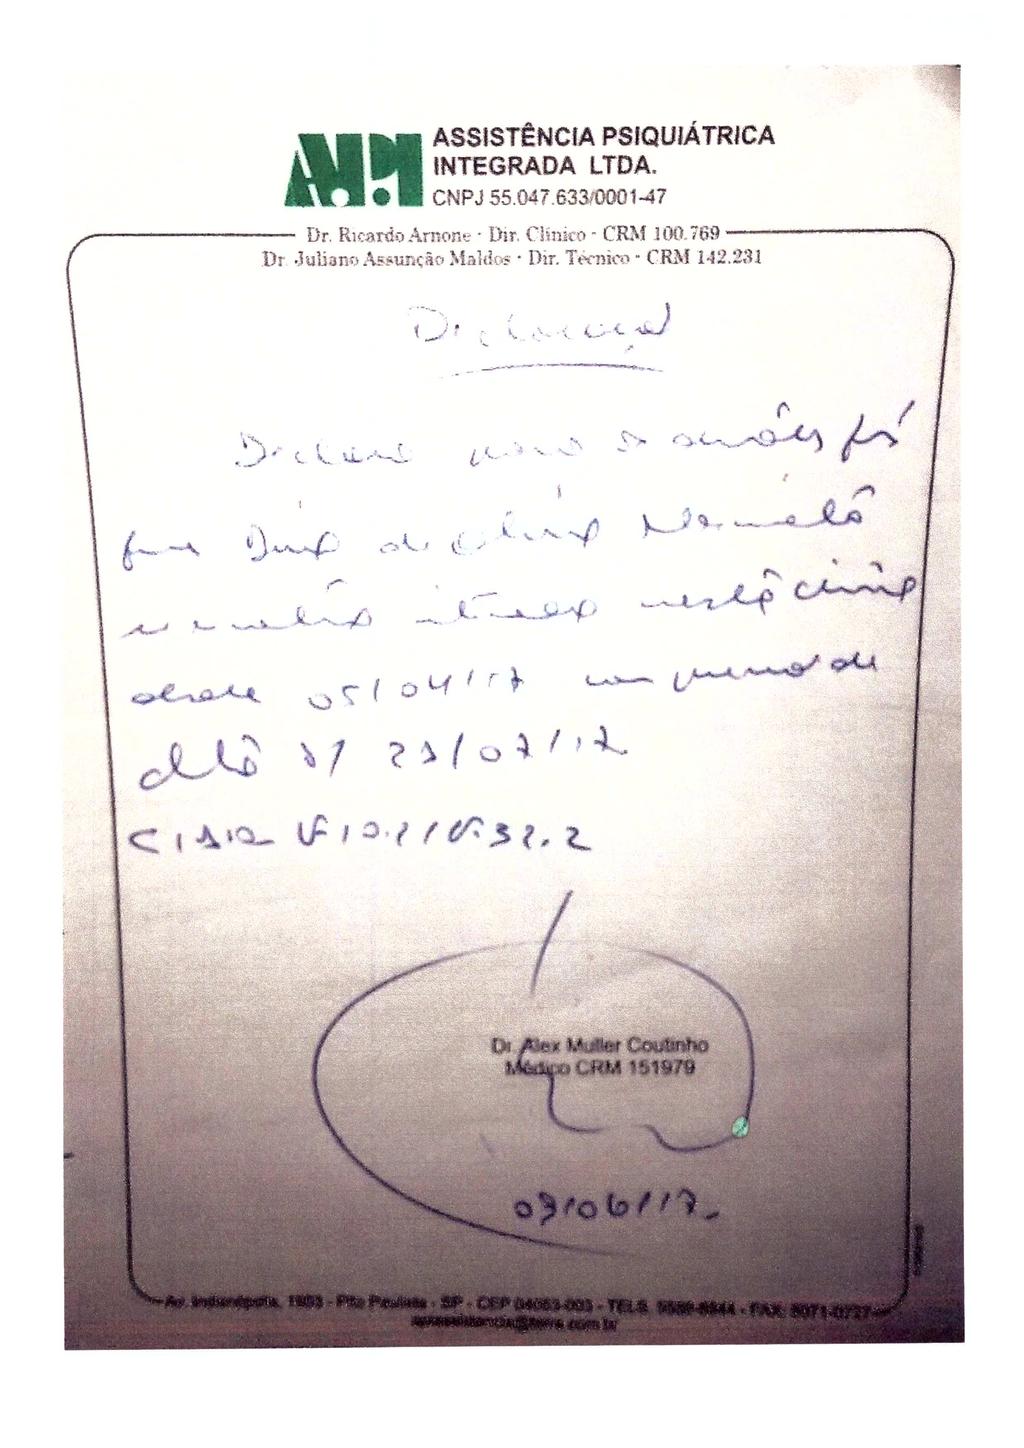 fls. 67 Este documento é cópia do original, assinado digitalmente por CINTIA DE ALCANTARA CALIL DAHER, liberado nos autos em 21/06/2017 às 15:58.